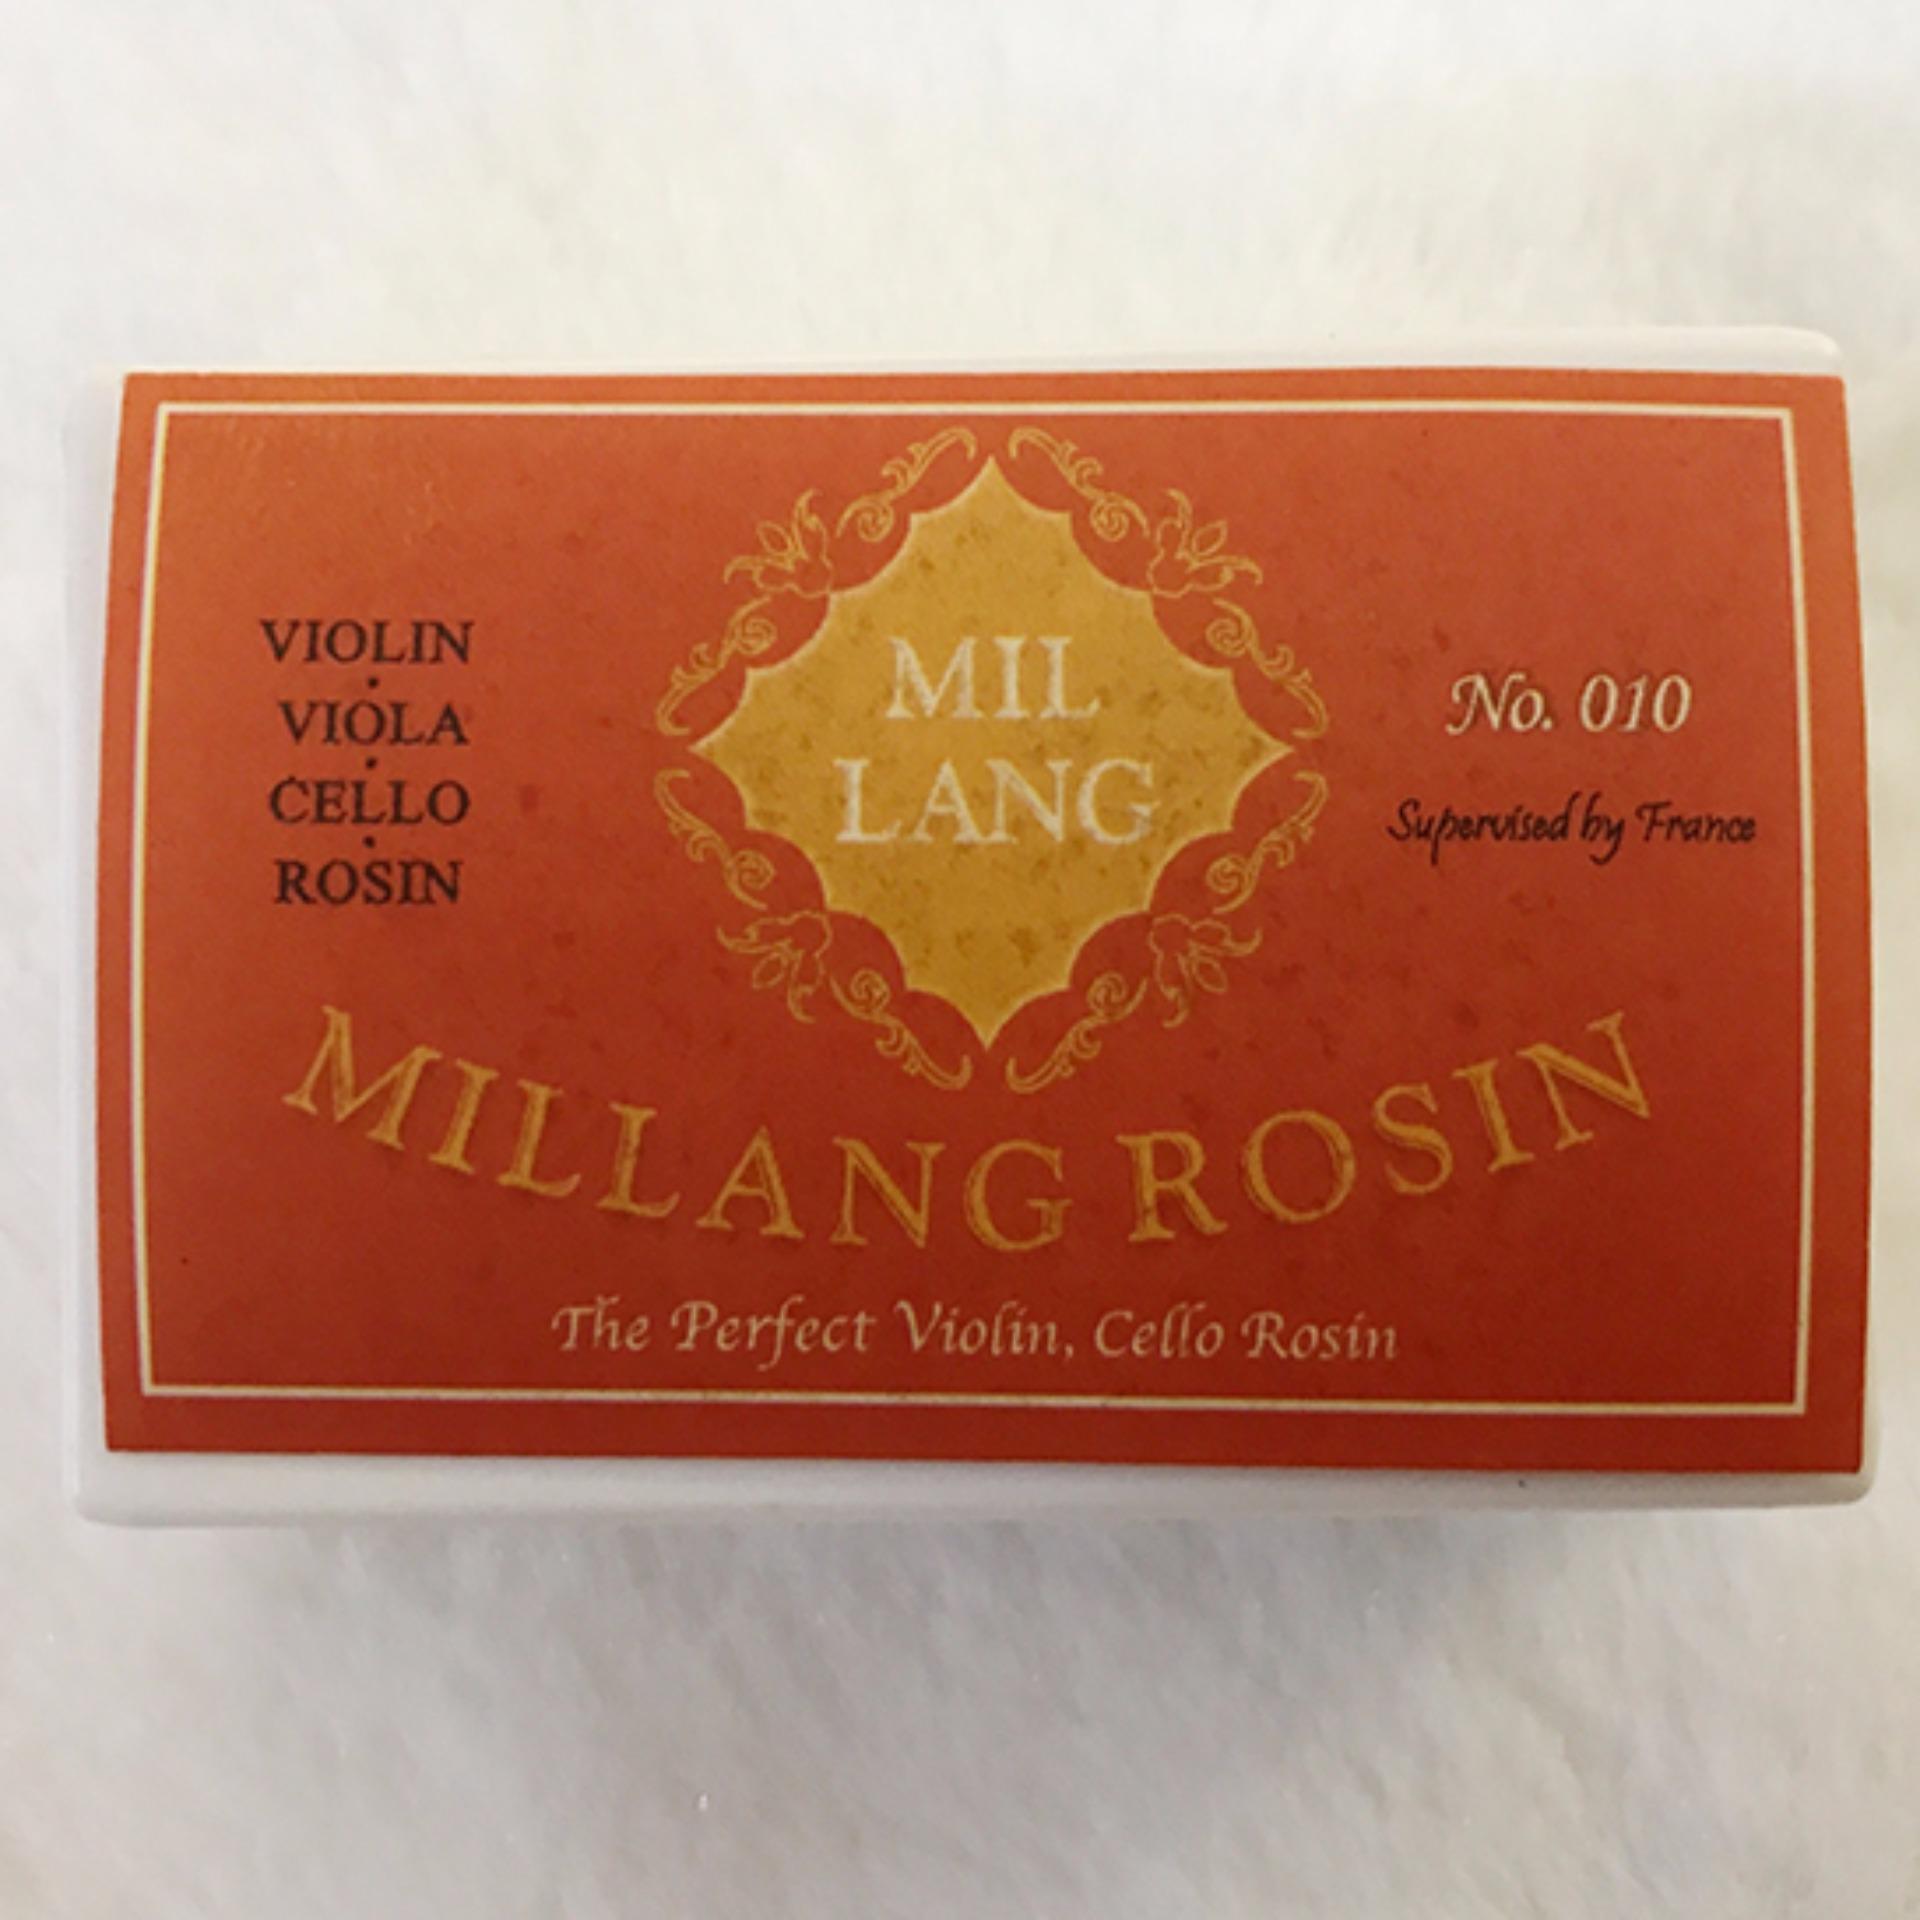 Nhựa thông cho đàn violin, viola, celo chính hãng MILLANG ROSIN